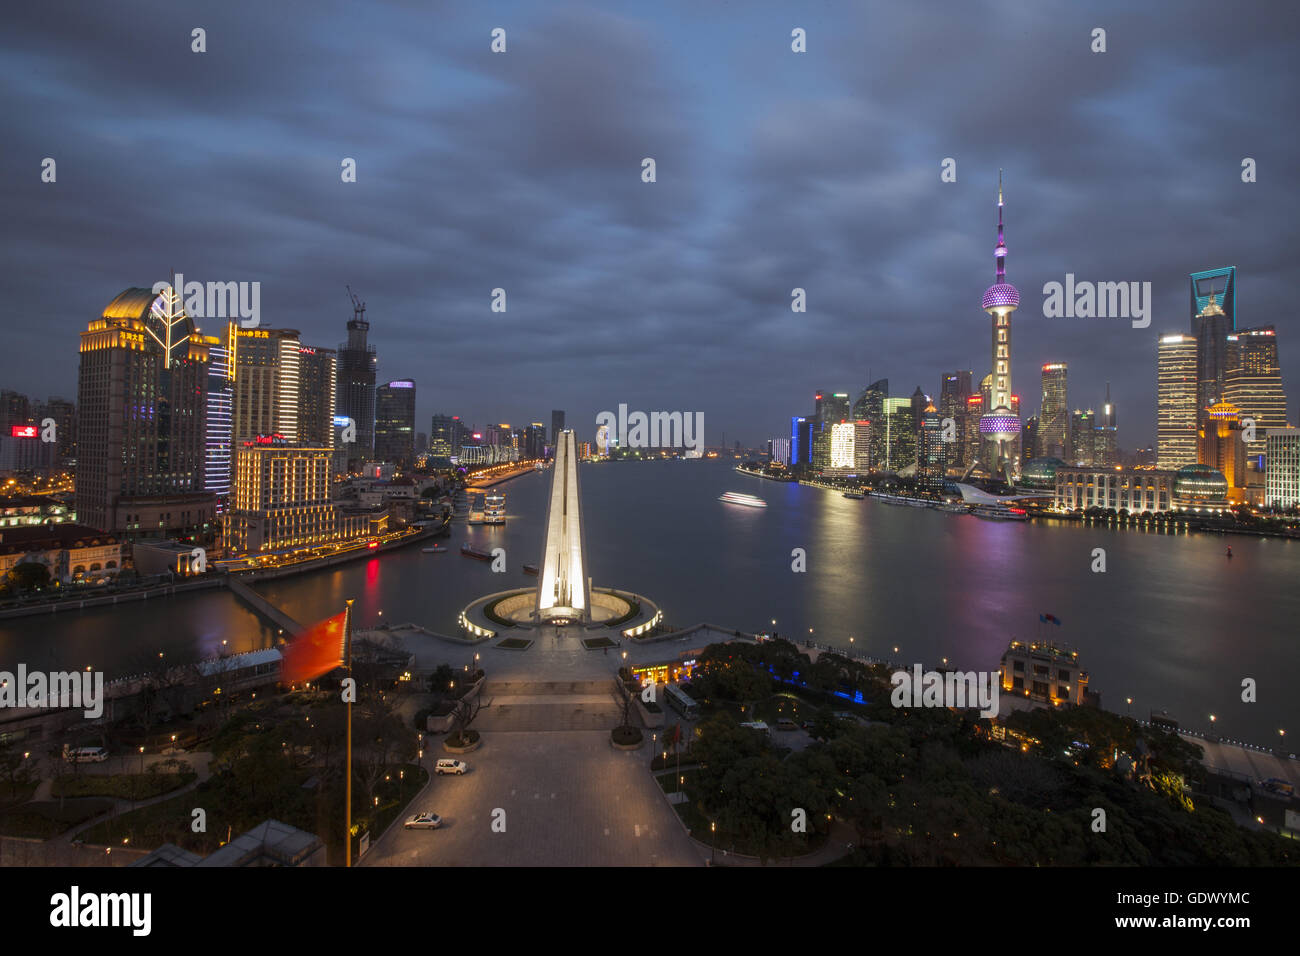 Questa immagine di Shanghai Pudong area finanziaria visto dalla cima del tetto del Peninsula Hotel Foto Stock